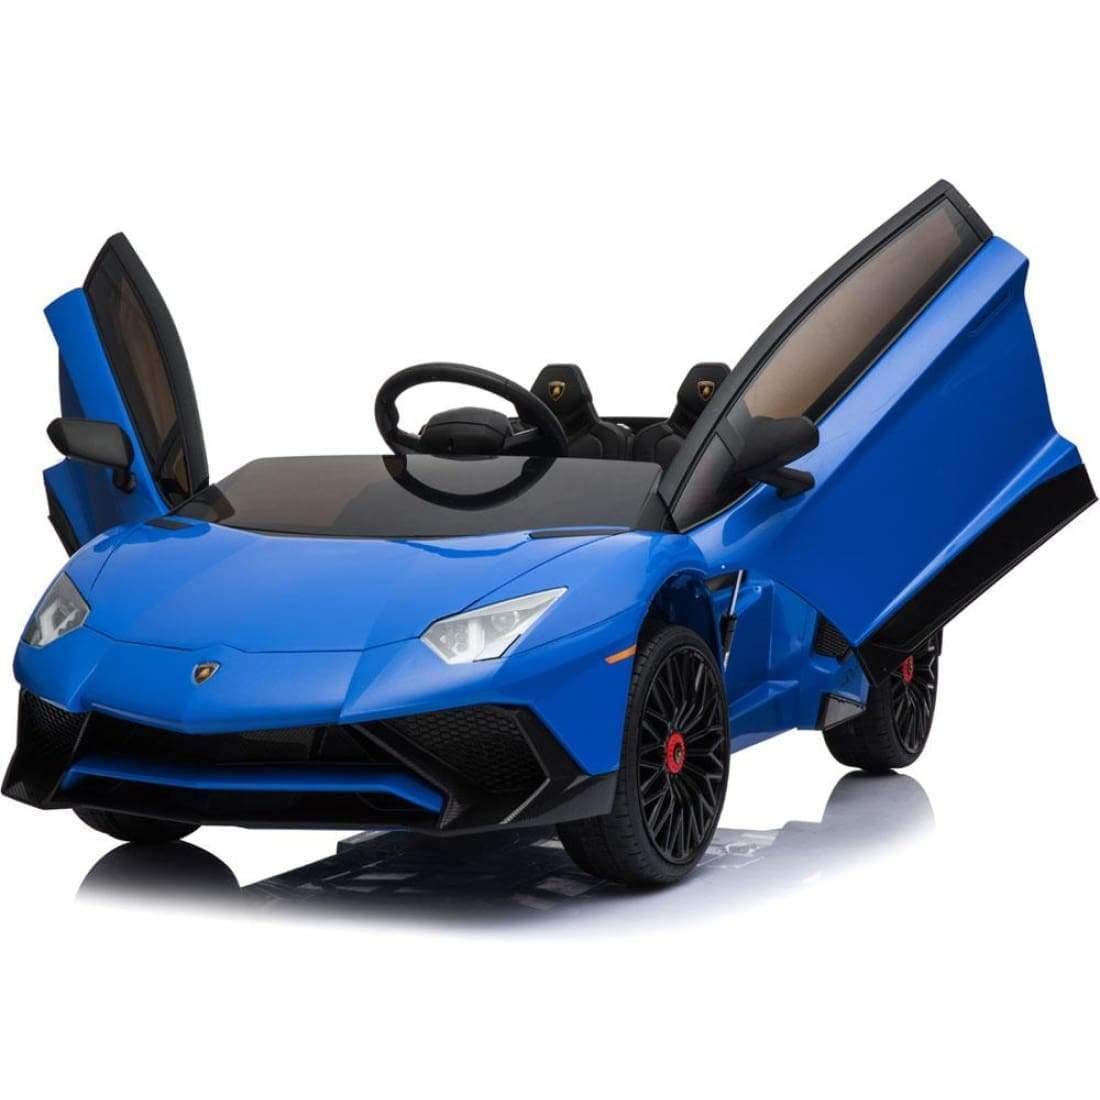 Mini Motos Ride On Cars Mini Moto Lamborghini 12v Blue-MM-0913-Lambo-12v-Blue